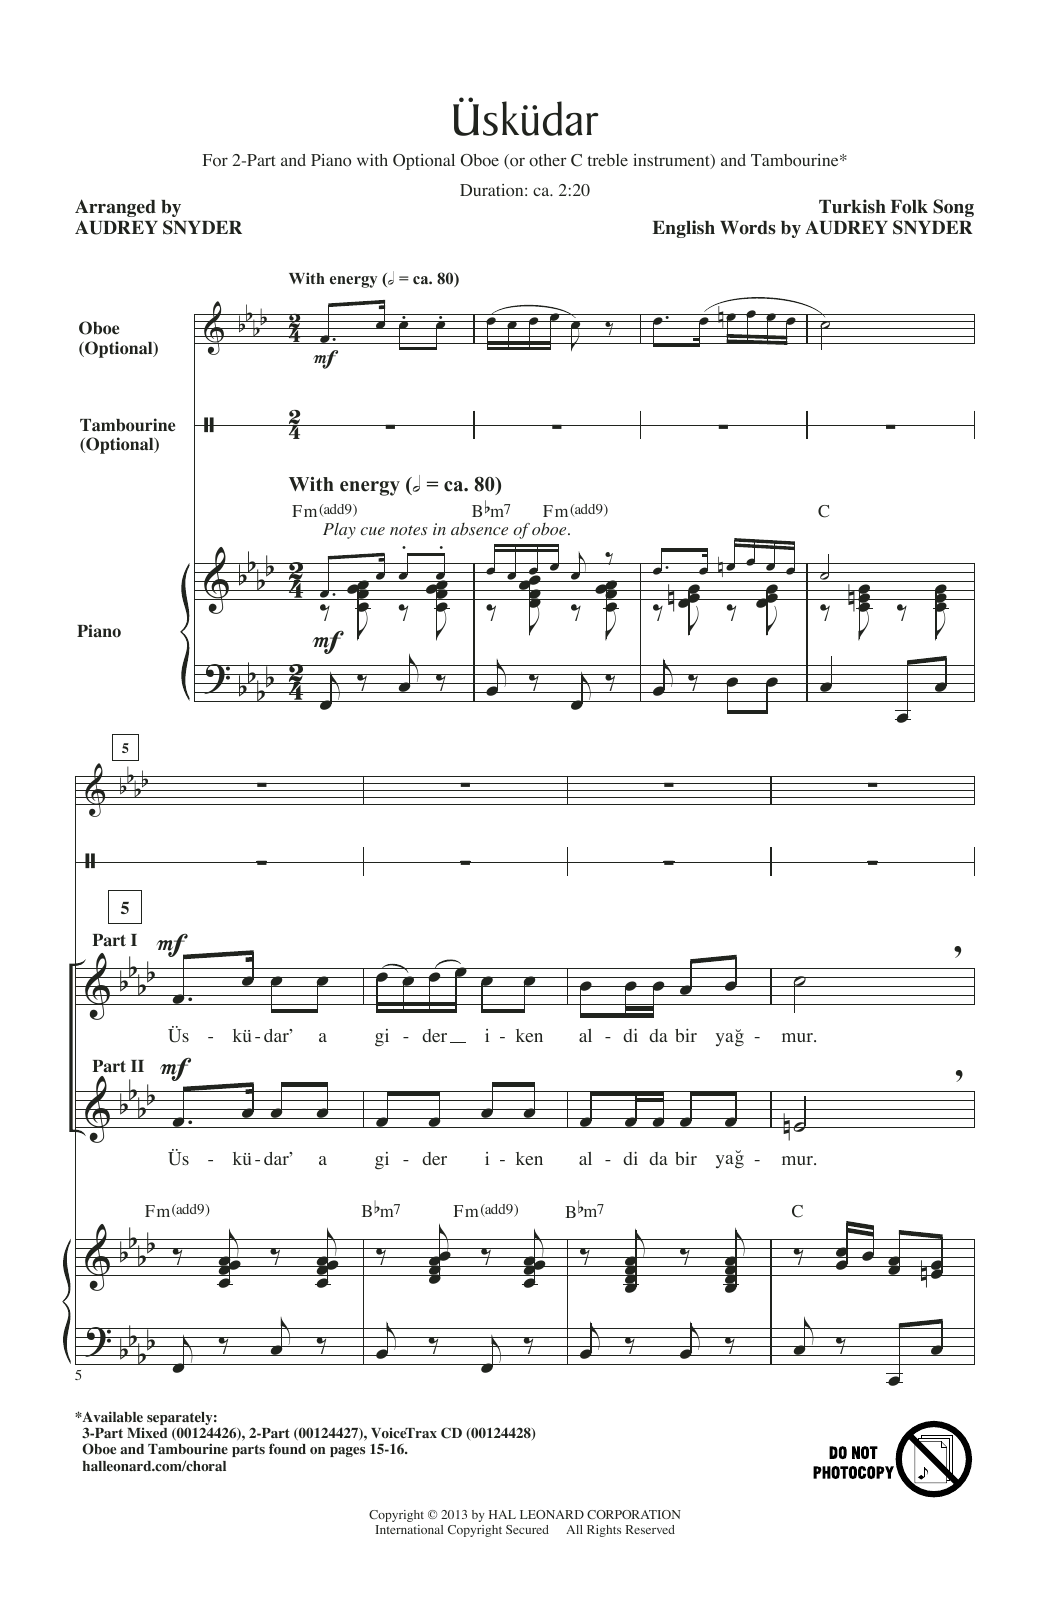 Audrey Snyder Uskudar Sheet Music Notes & Chords for 2-Part Choir - Download or Print PDF